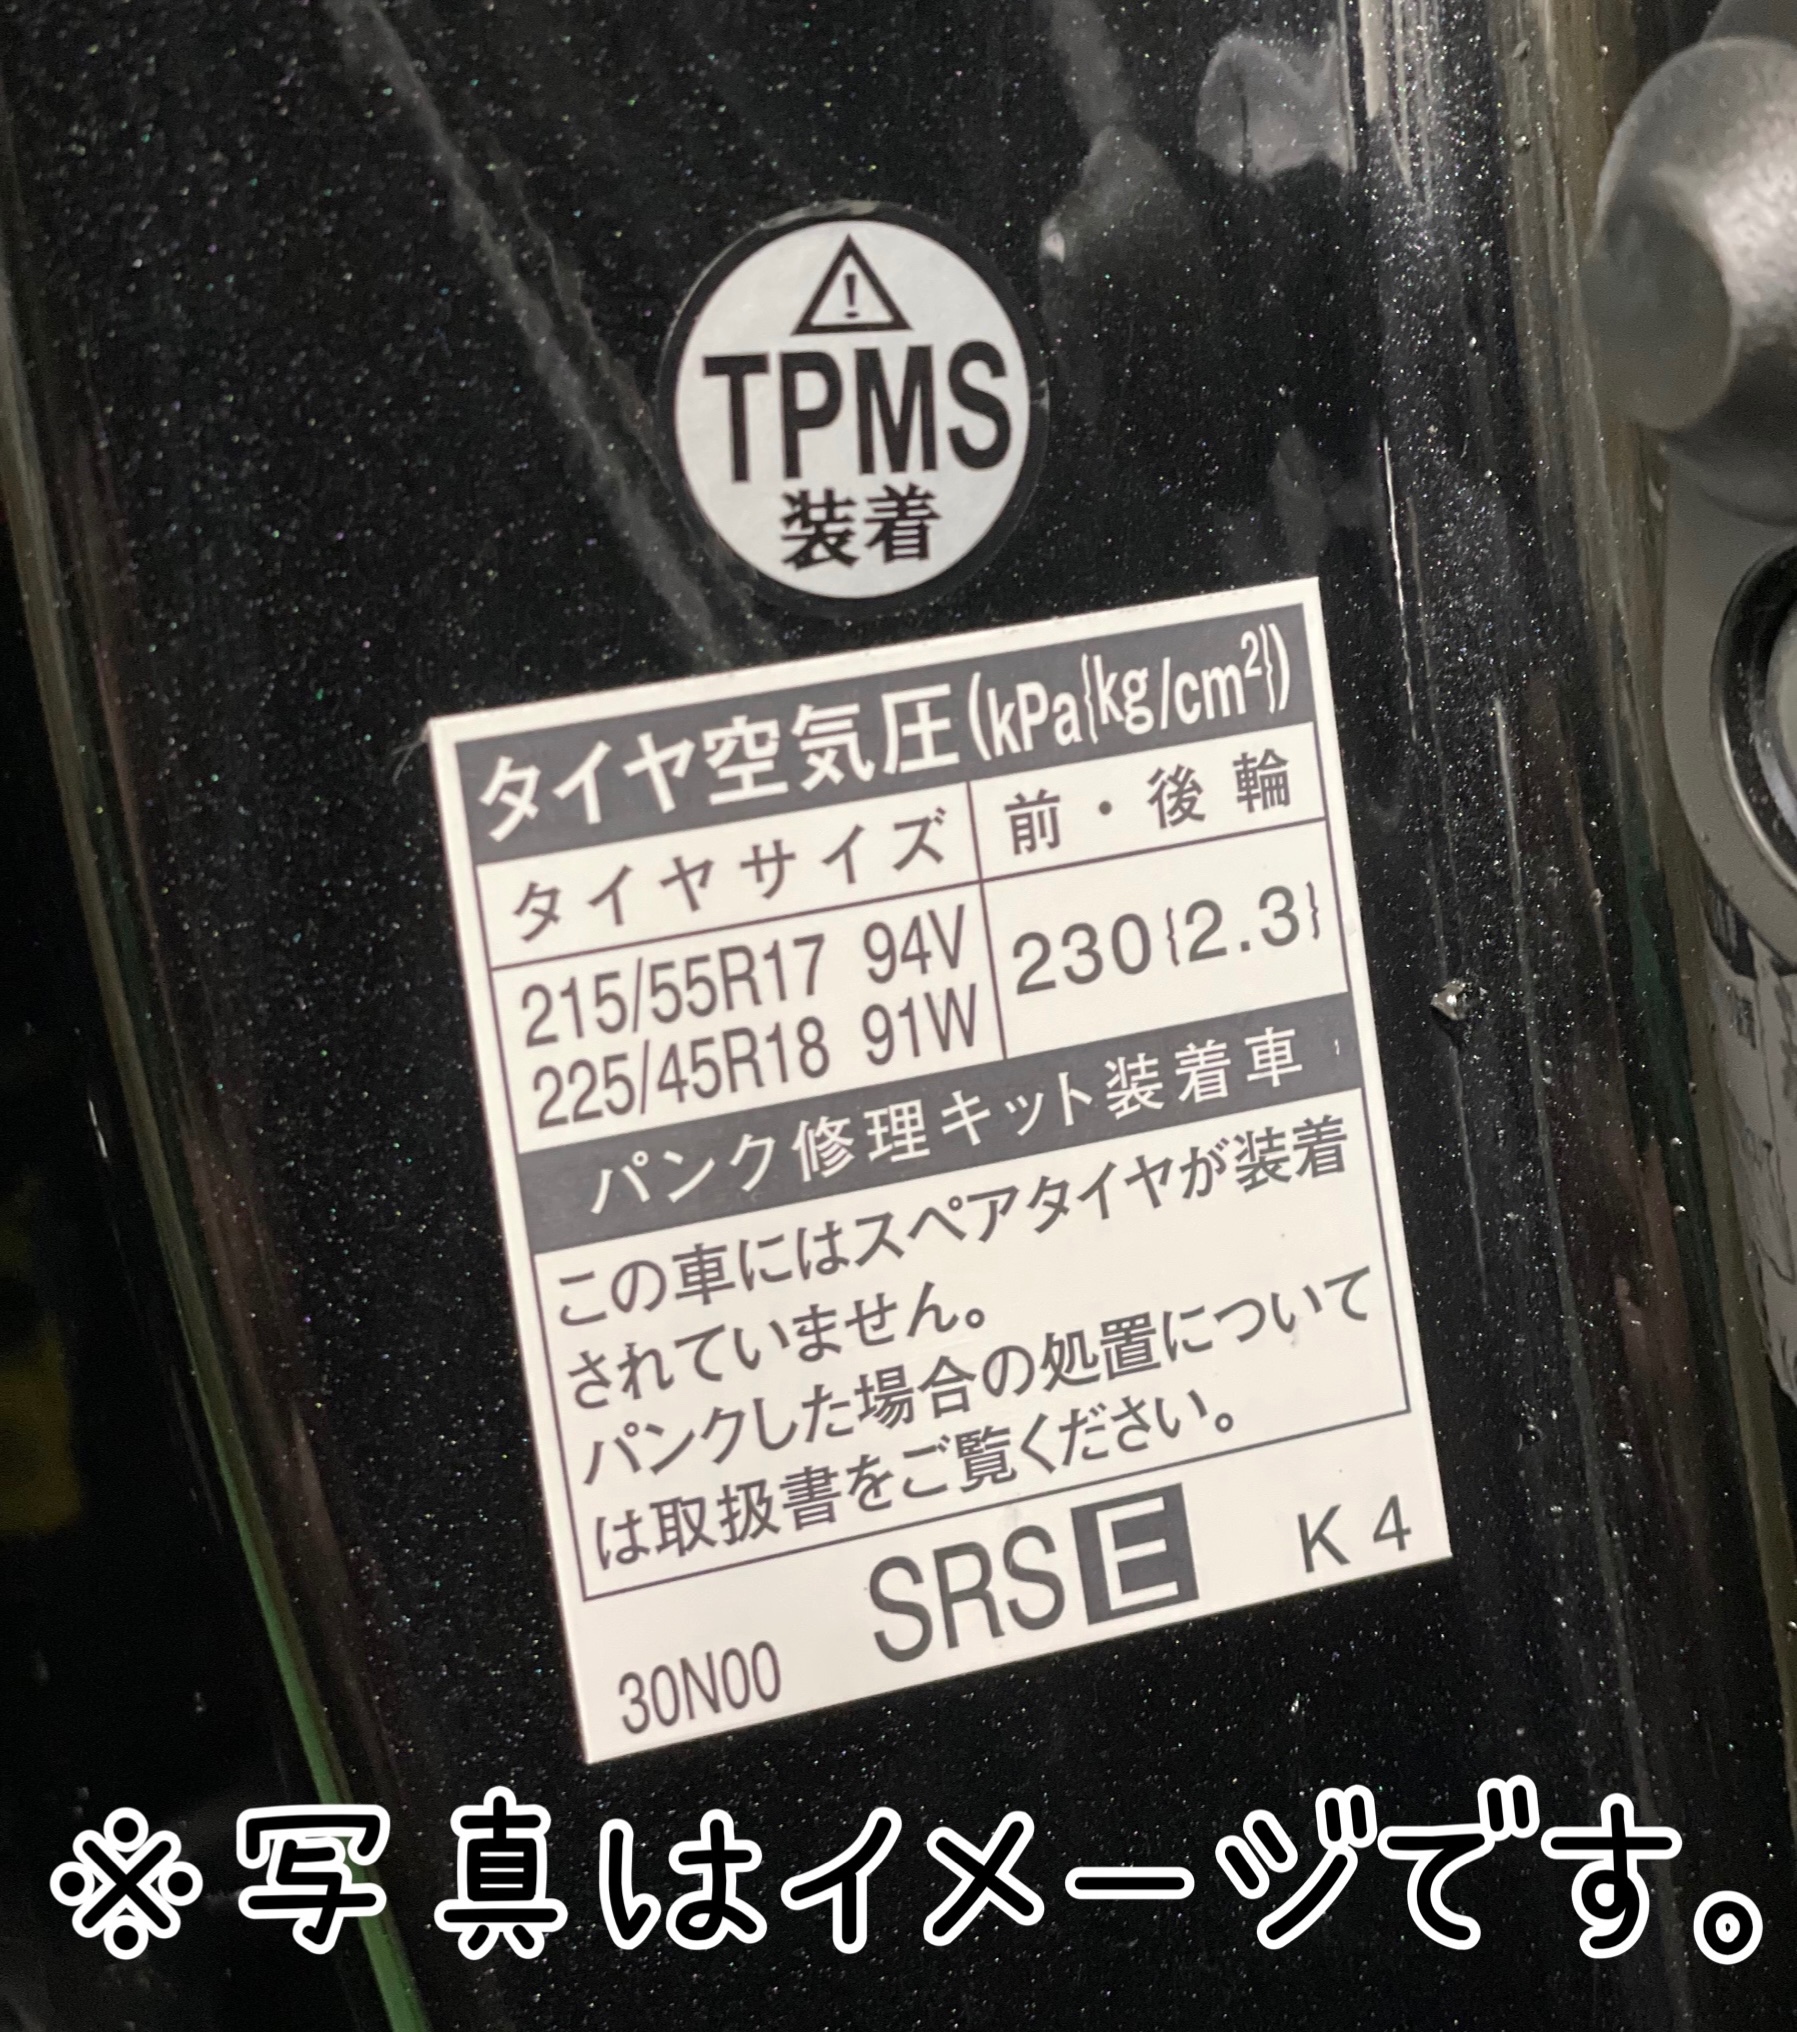 タイヤ空気圧モニタリングシステム TPMS